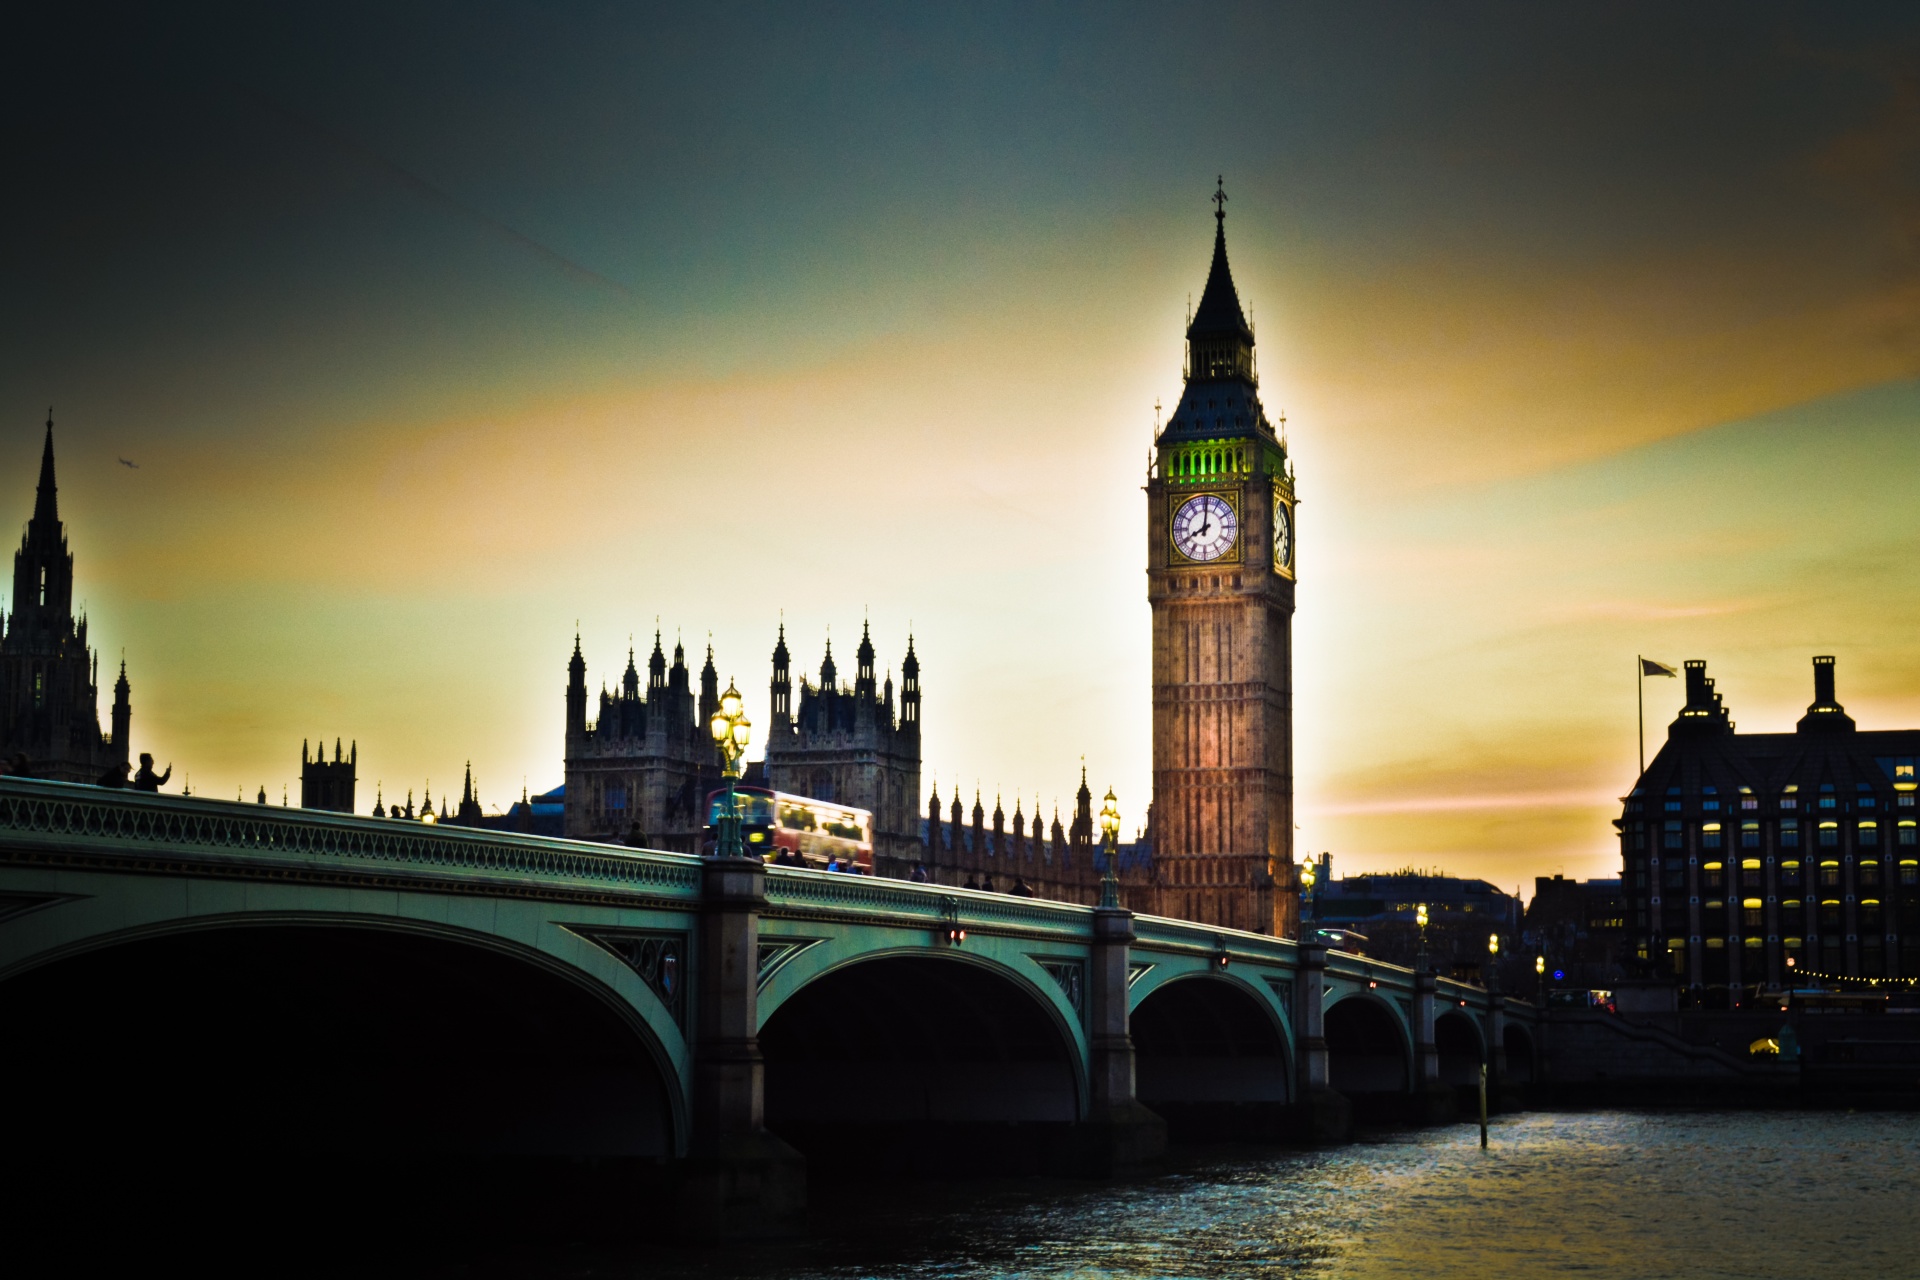 London Parliament & Big Ben